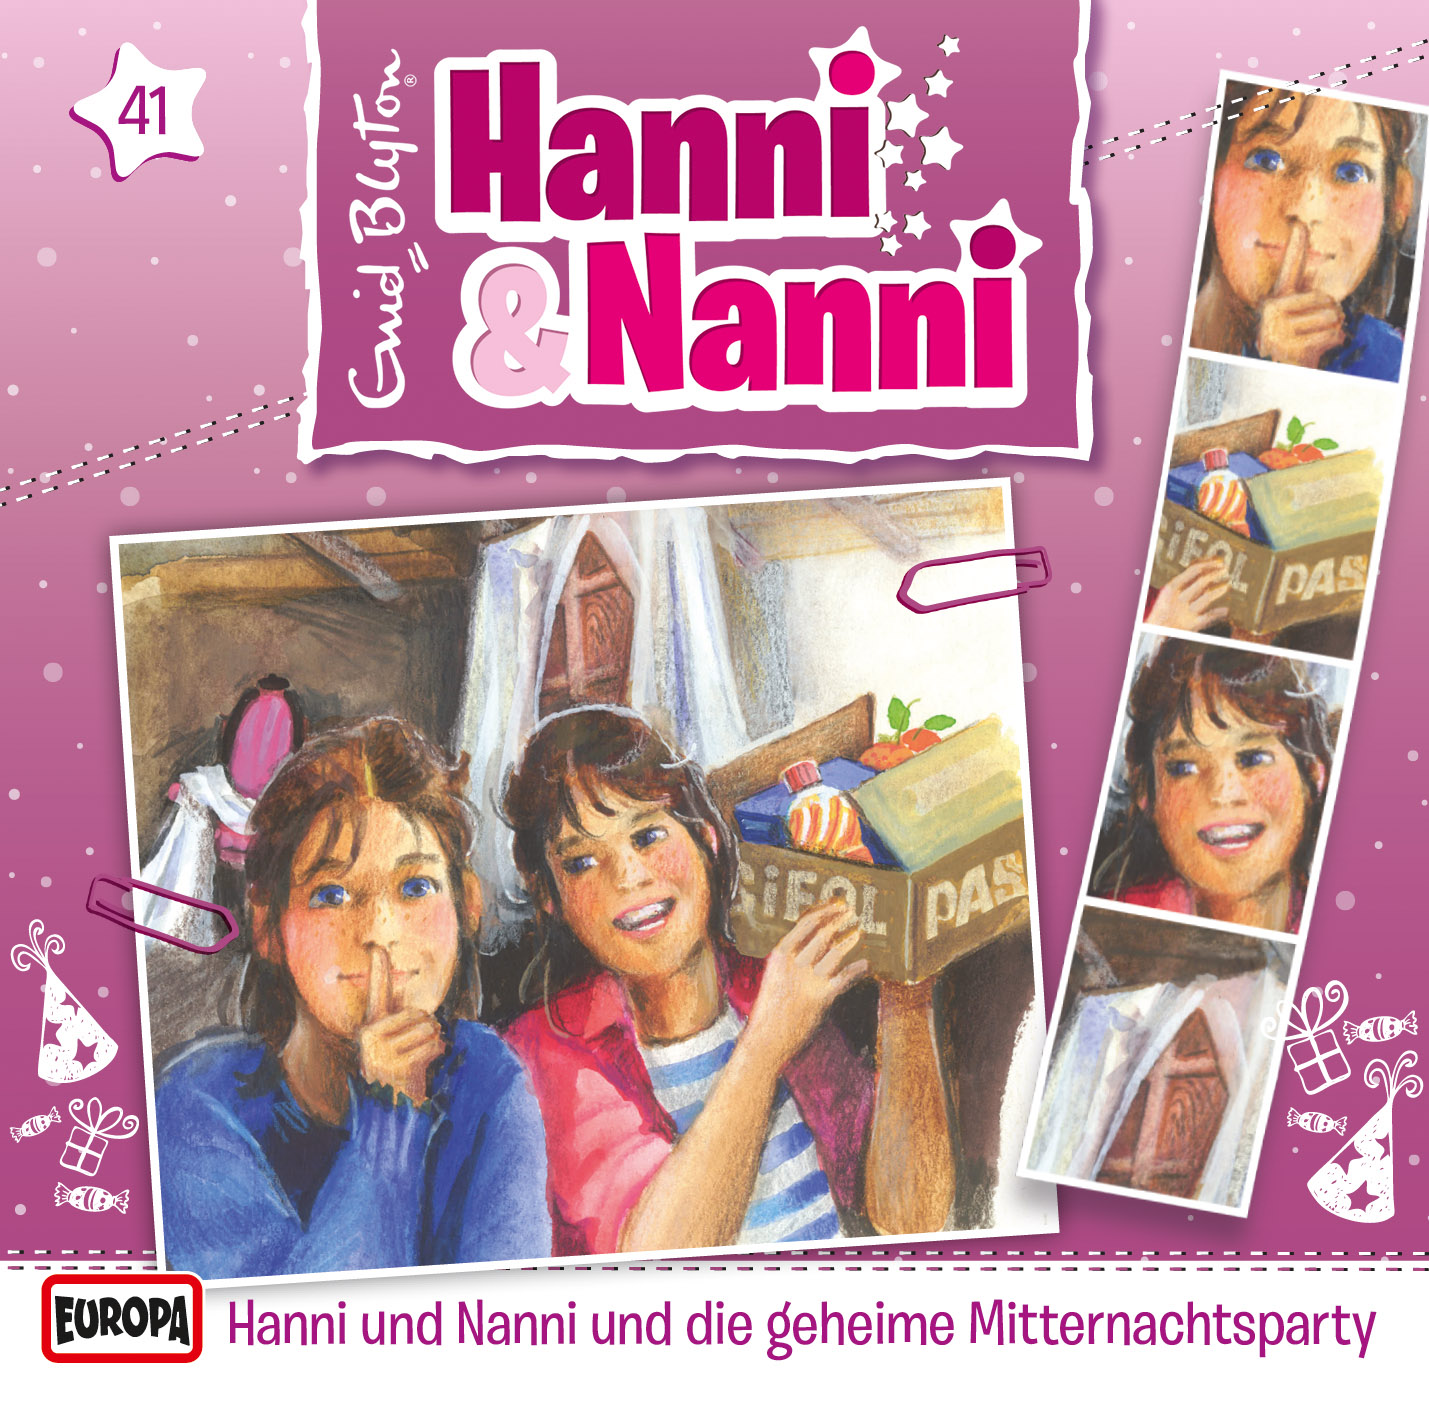 Hanni und Nanni: Hanni & Nanni und die geheime Mitternachtsparty